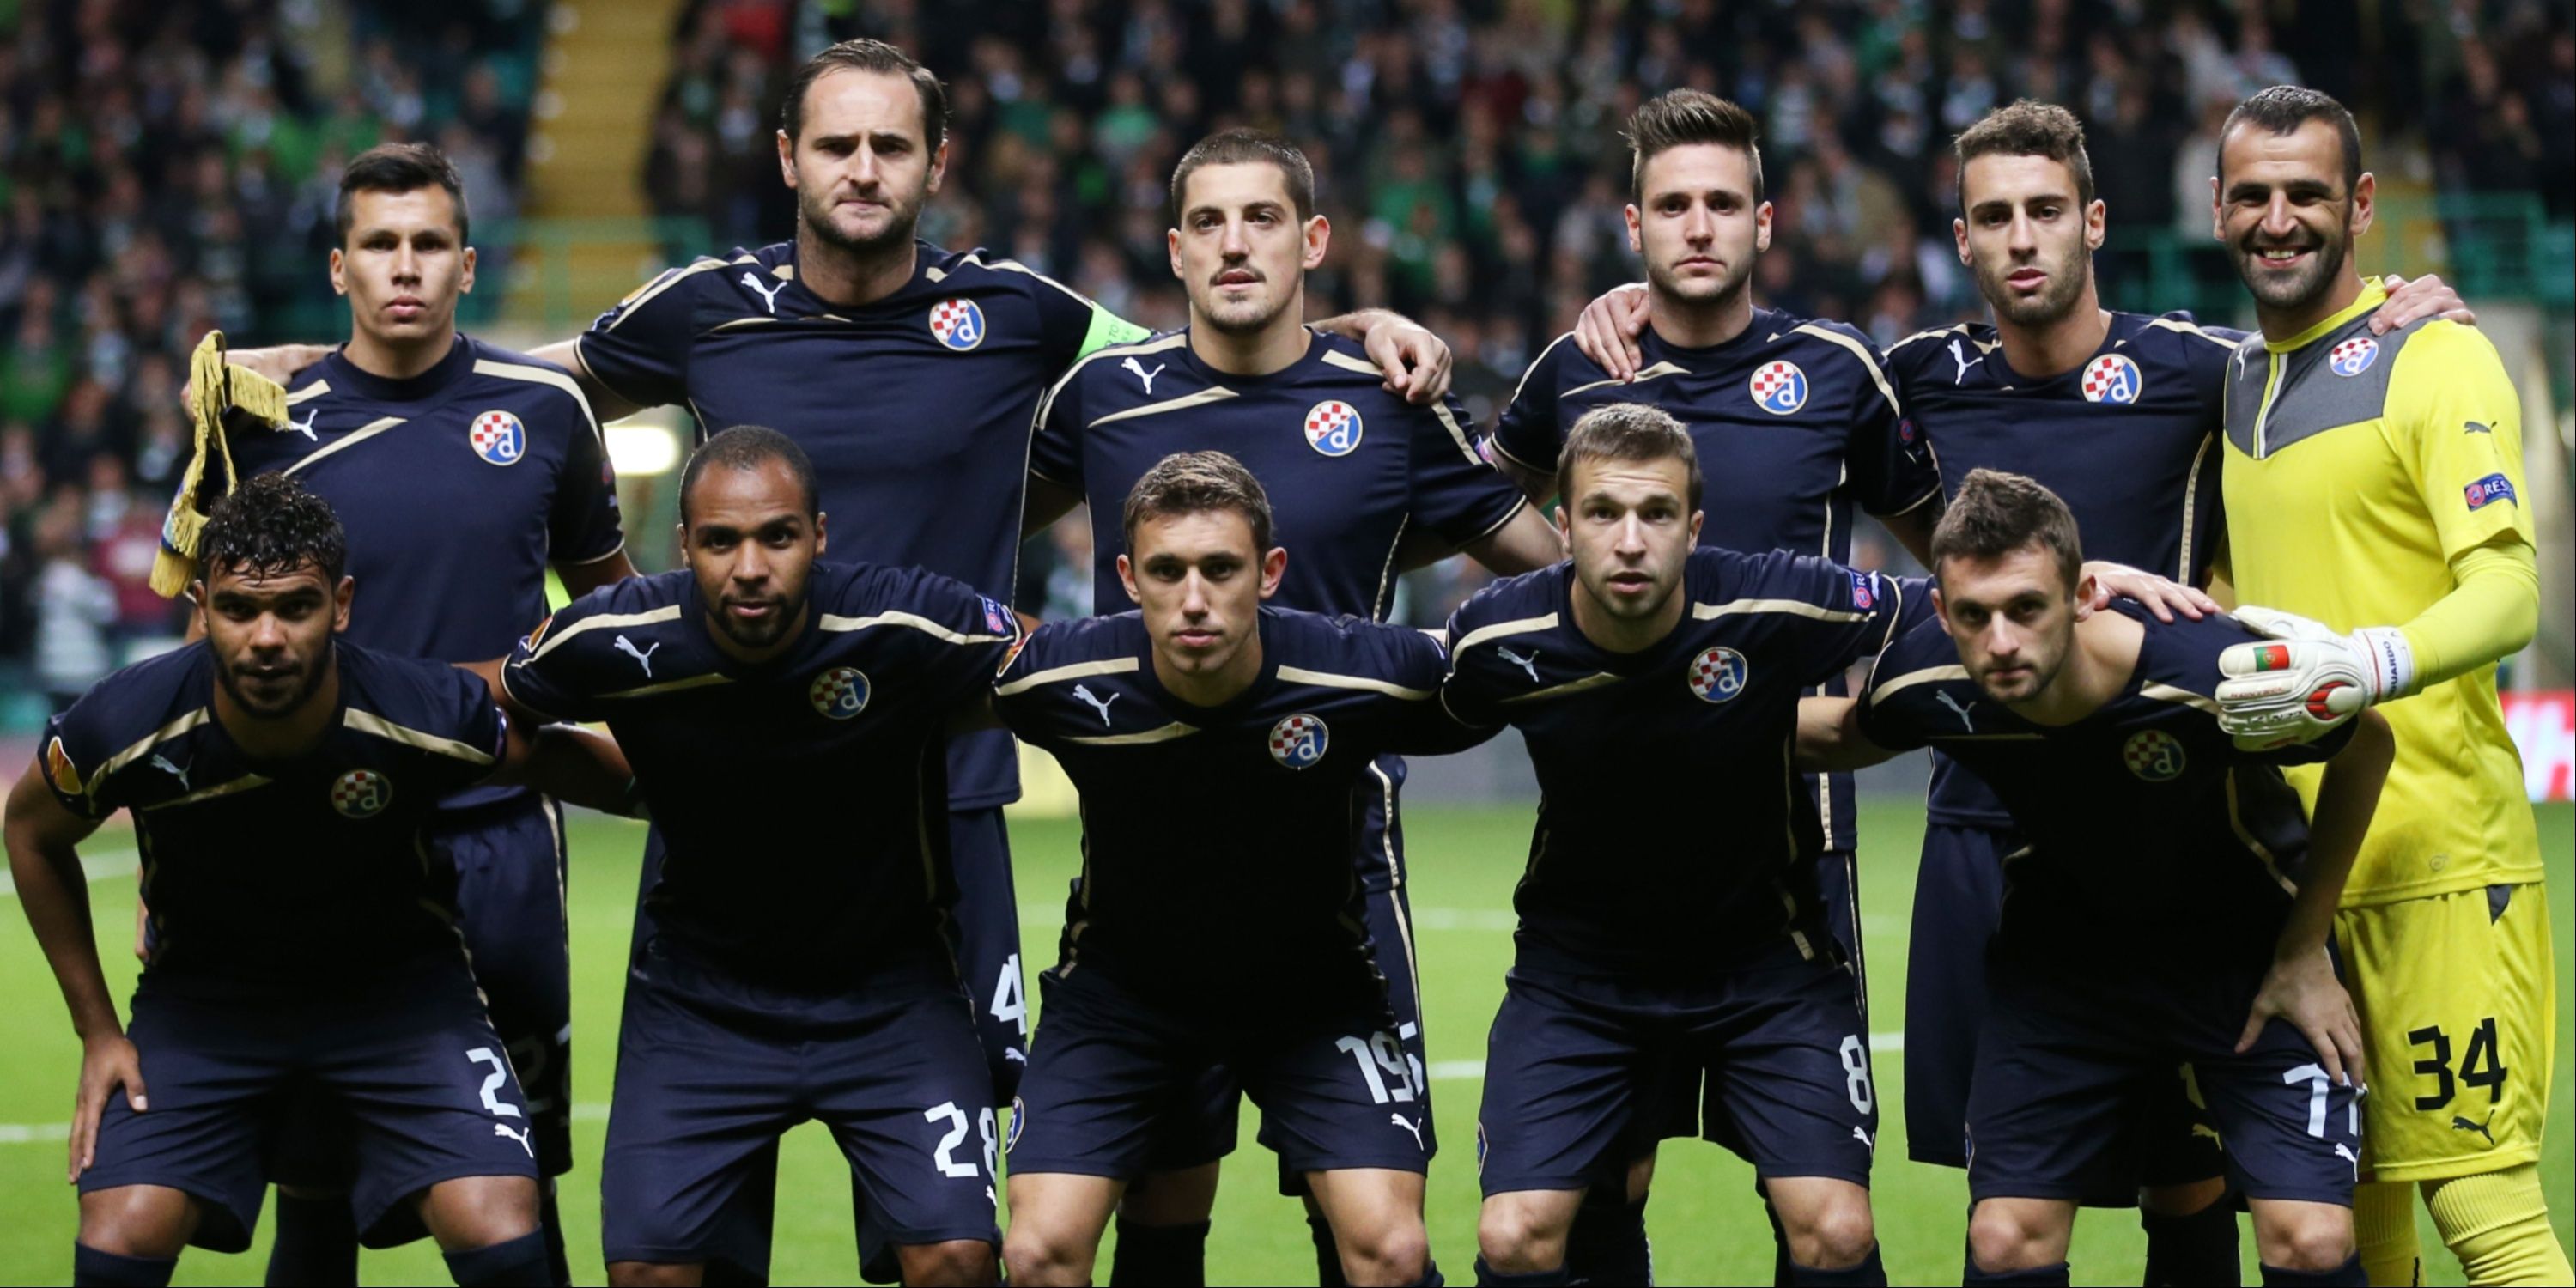 Dinamo Zagreb lineup